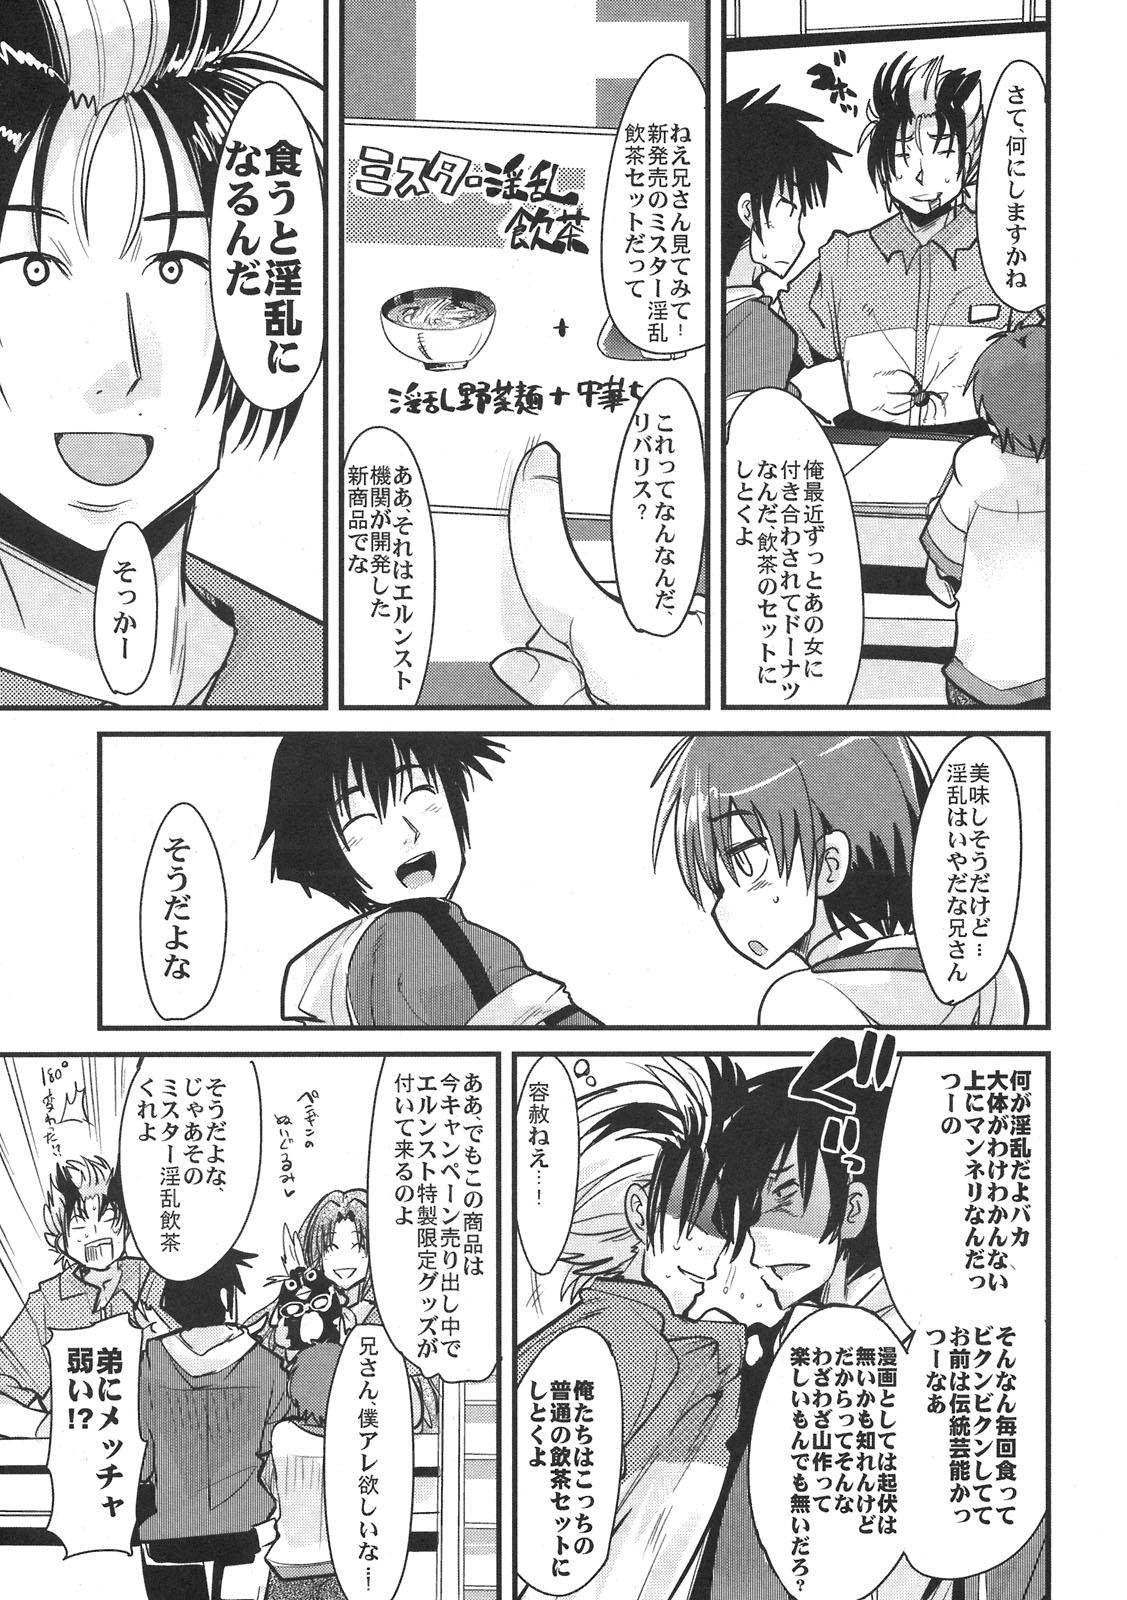 Twinks Boku no Watashi no Super Bobobbo Taisen NEOntier - Super robot wars Endless frontier Girlongirl - Page 7